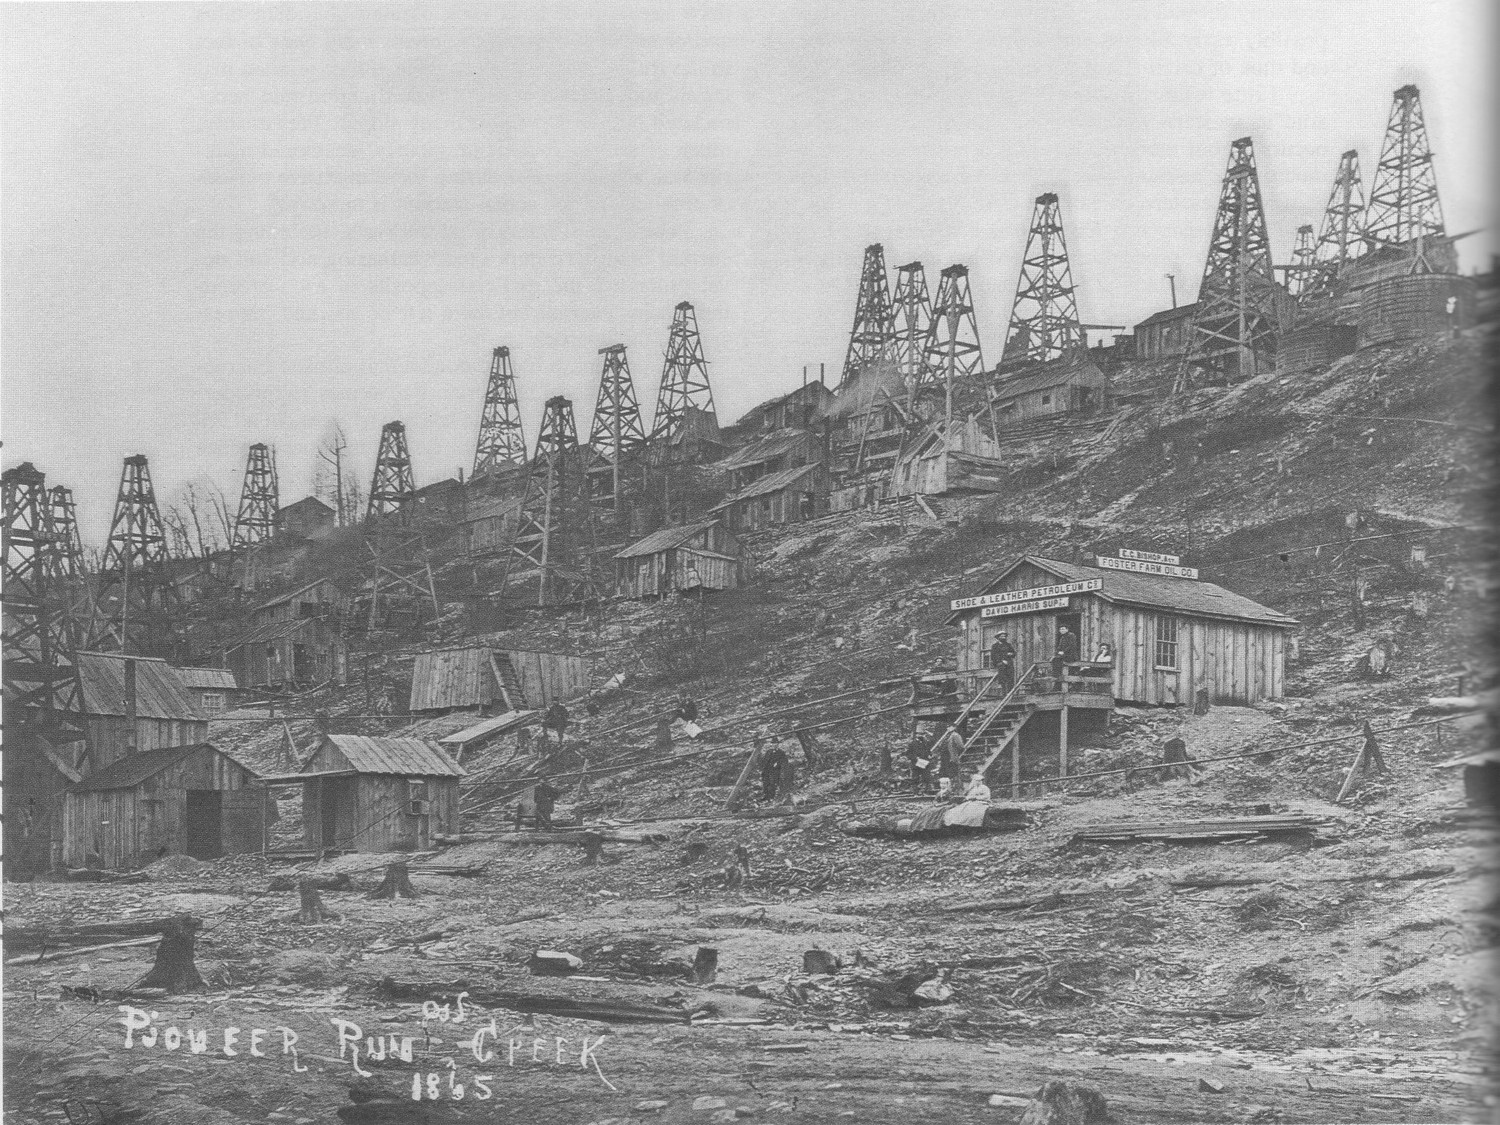 Pioneer Run oil field in 1859